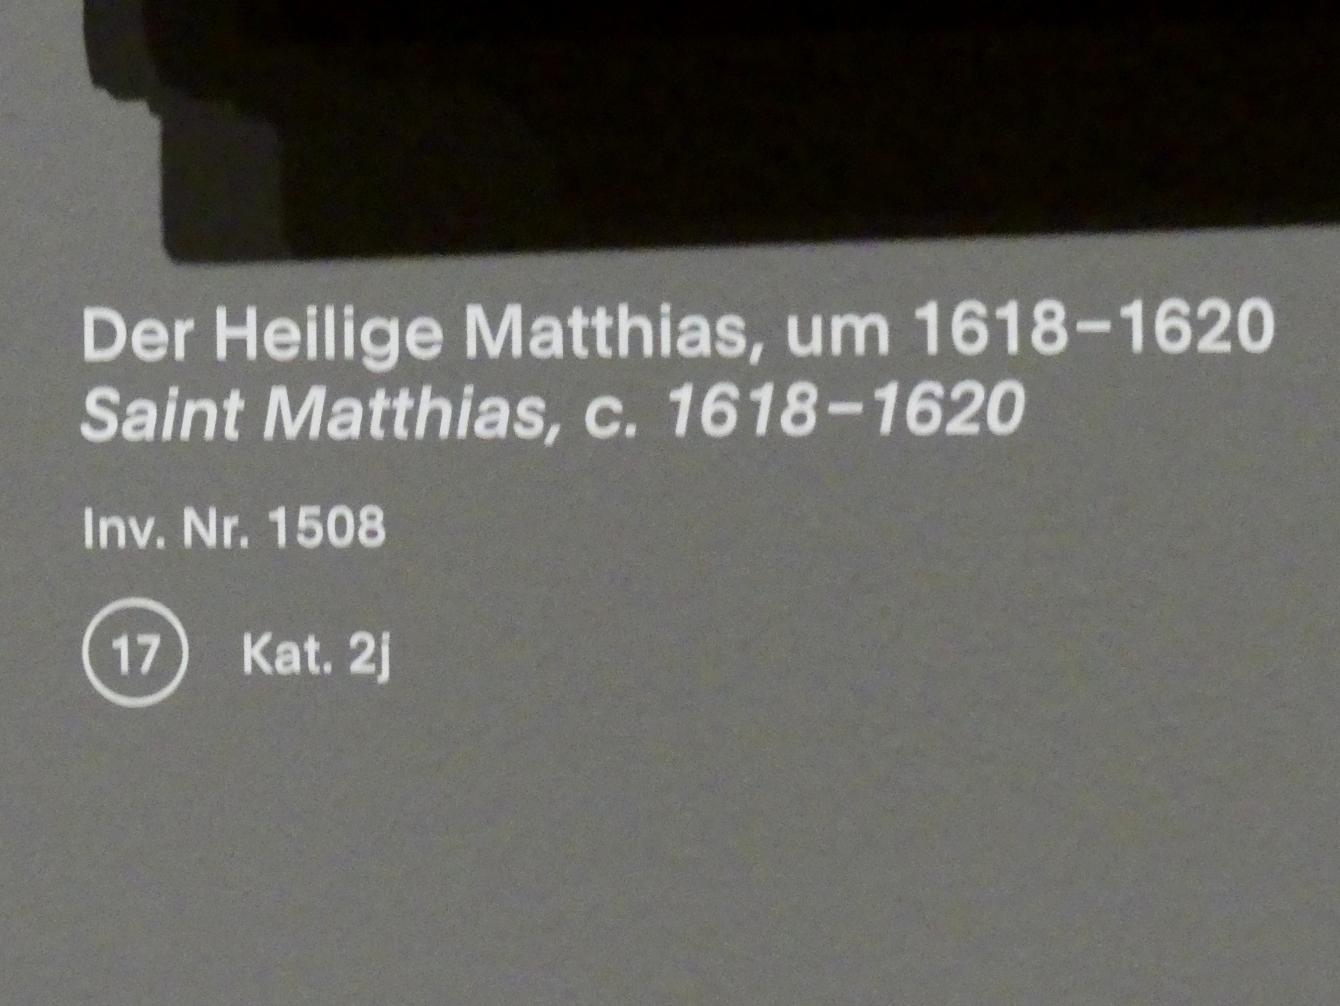 Anthonis (Anton) van Dyck (Werkstatt) (1619–1636), Der Heilige Matthias, München, Alte Pinakothek, Ausstellung "Van Dyck" vom 25.10.2019-02.02.2020, Die Anfänge - 2, um 1618–1620, Bild 2/2